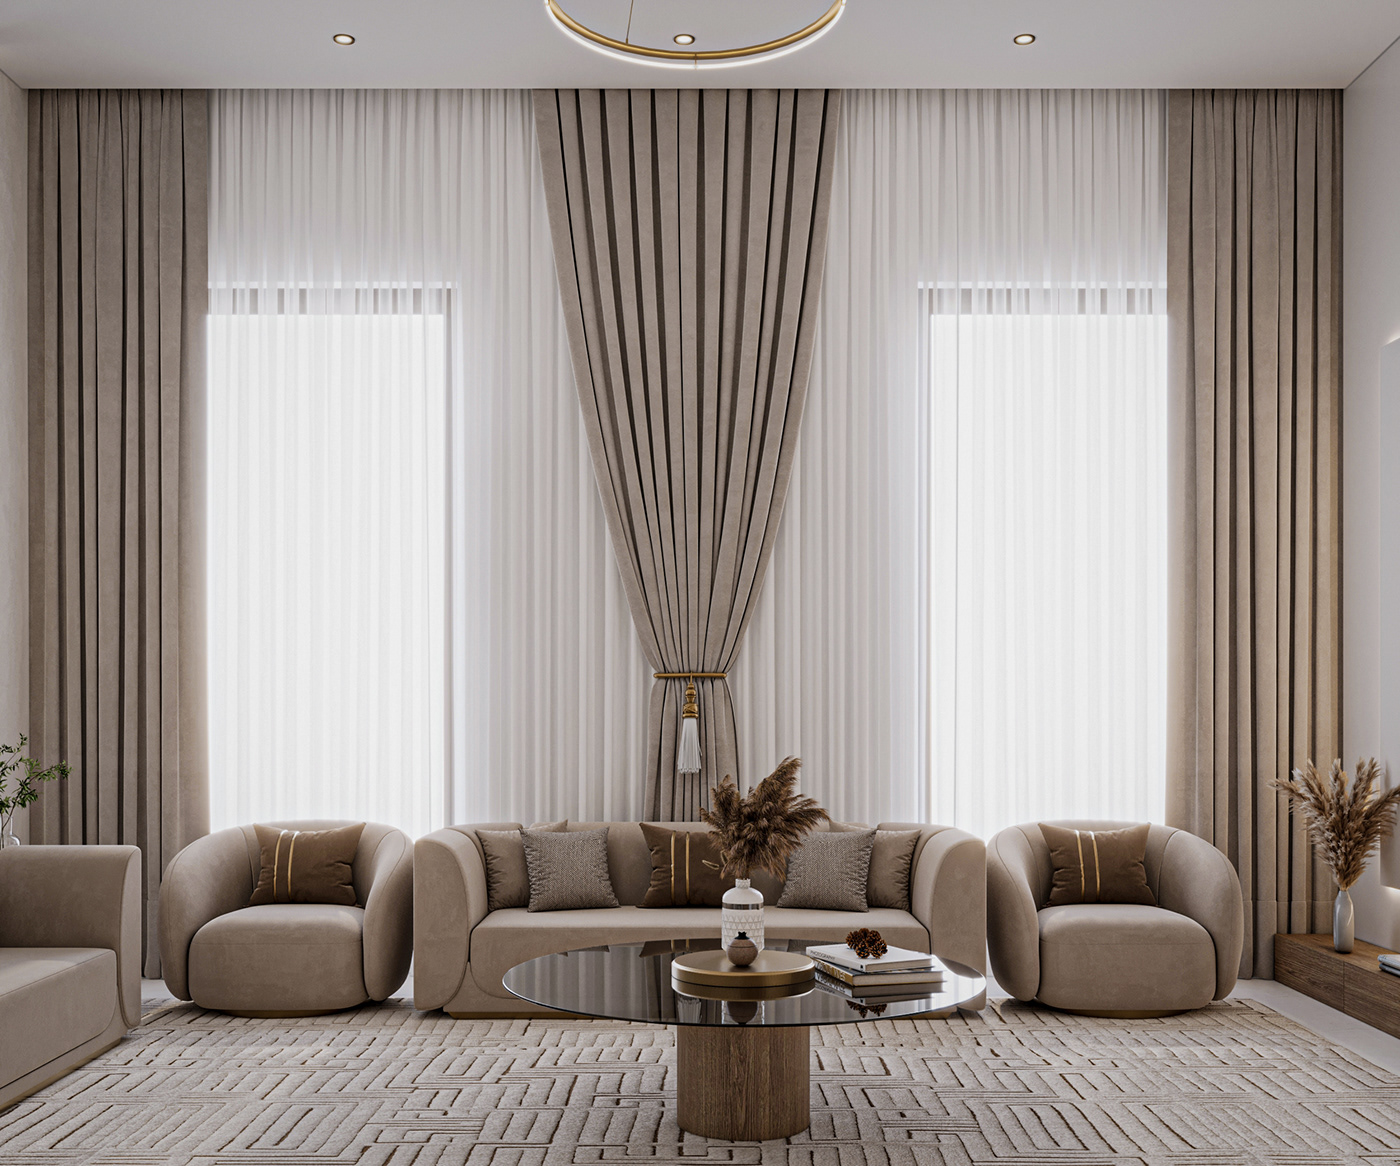 islamic design MAJLIS interior design  corona vray visualization 3ds max Render architecture 3D